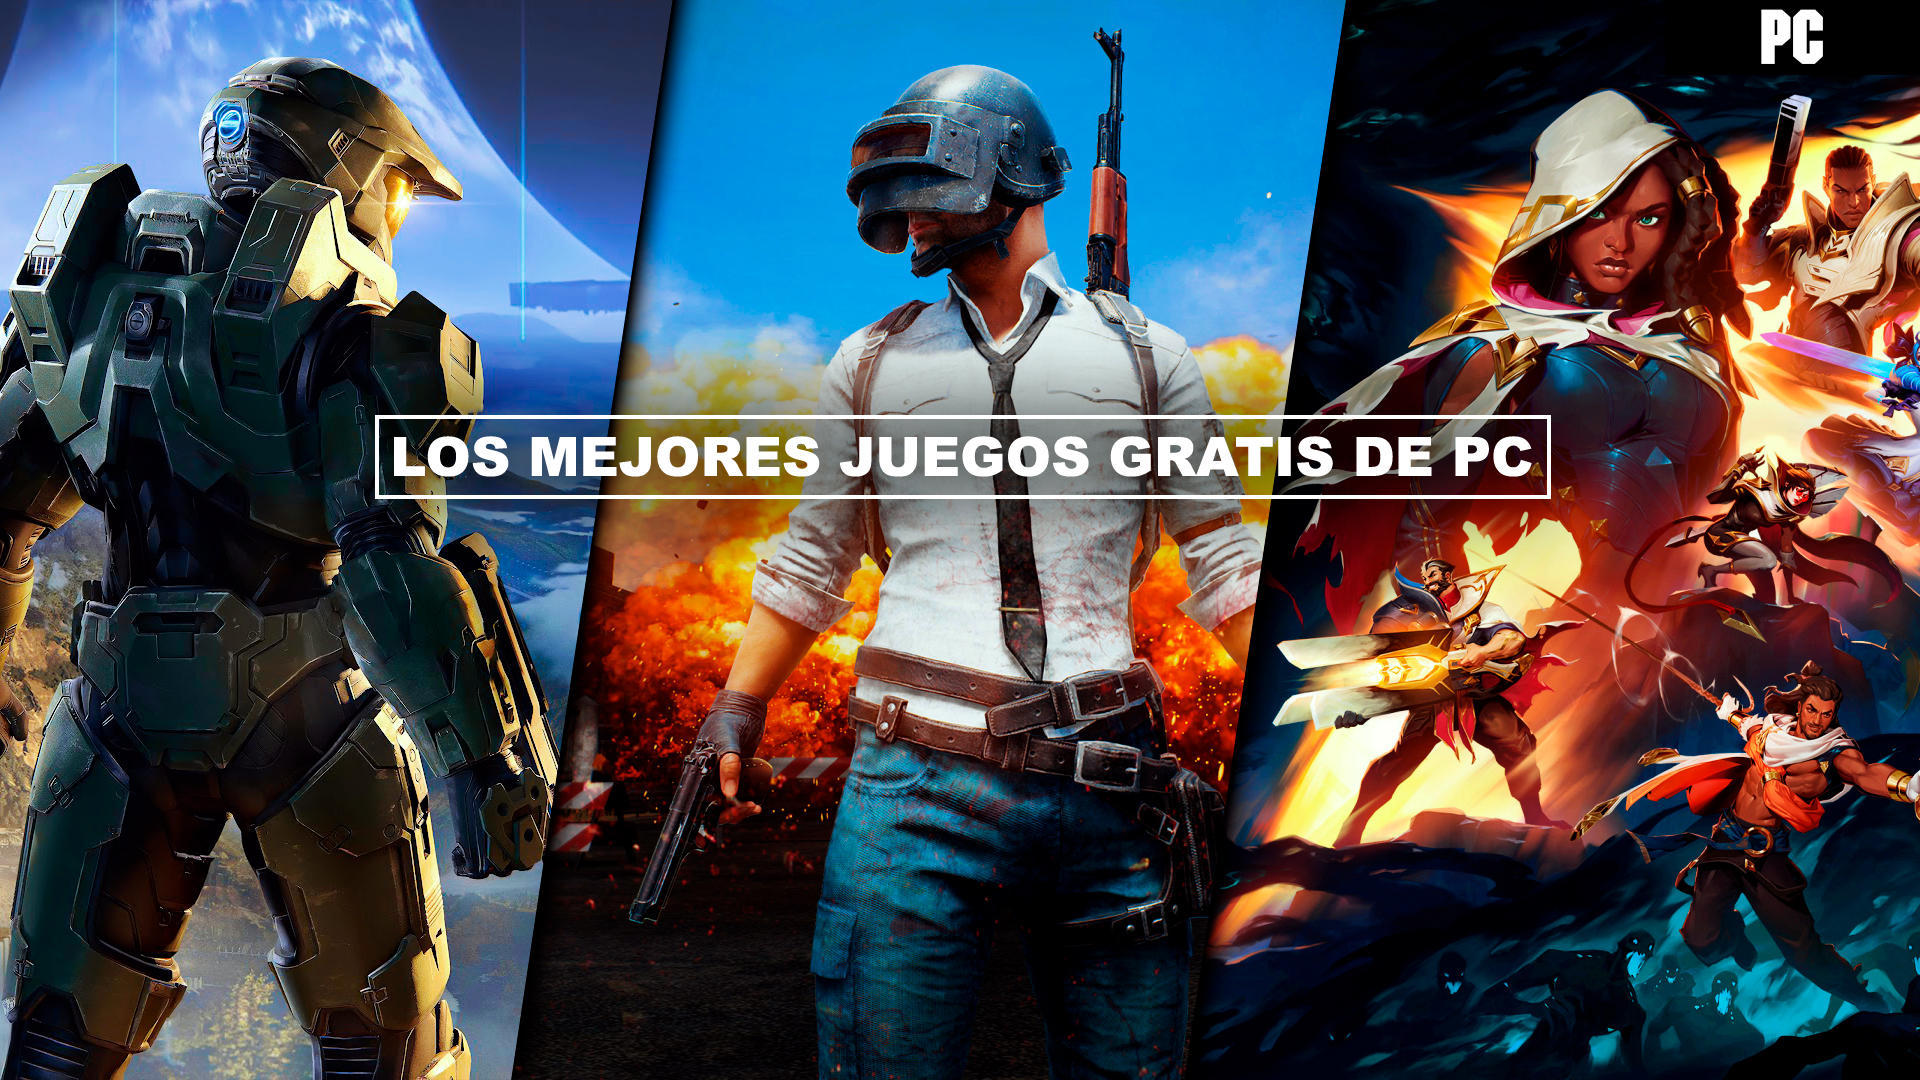 Desgracia Barrio Logro Los mejores juegos gratis de PC (2022) - Steam, Origin, Epic...